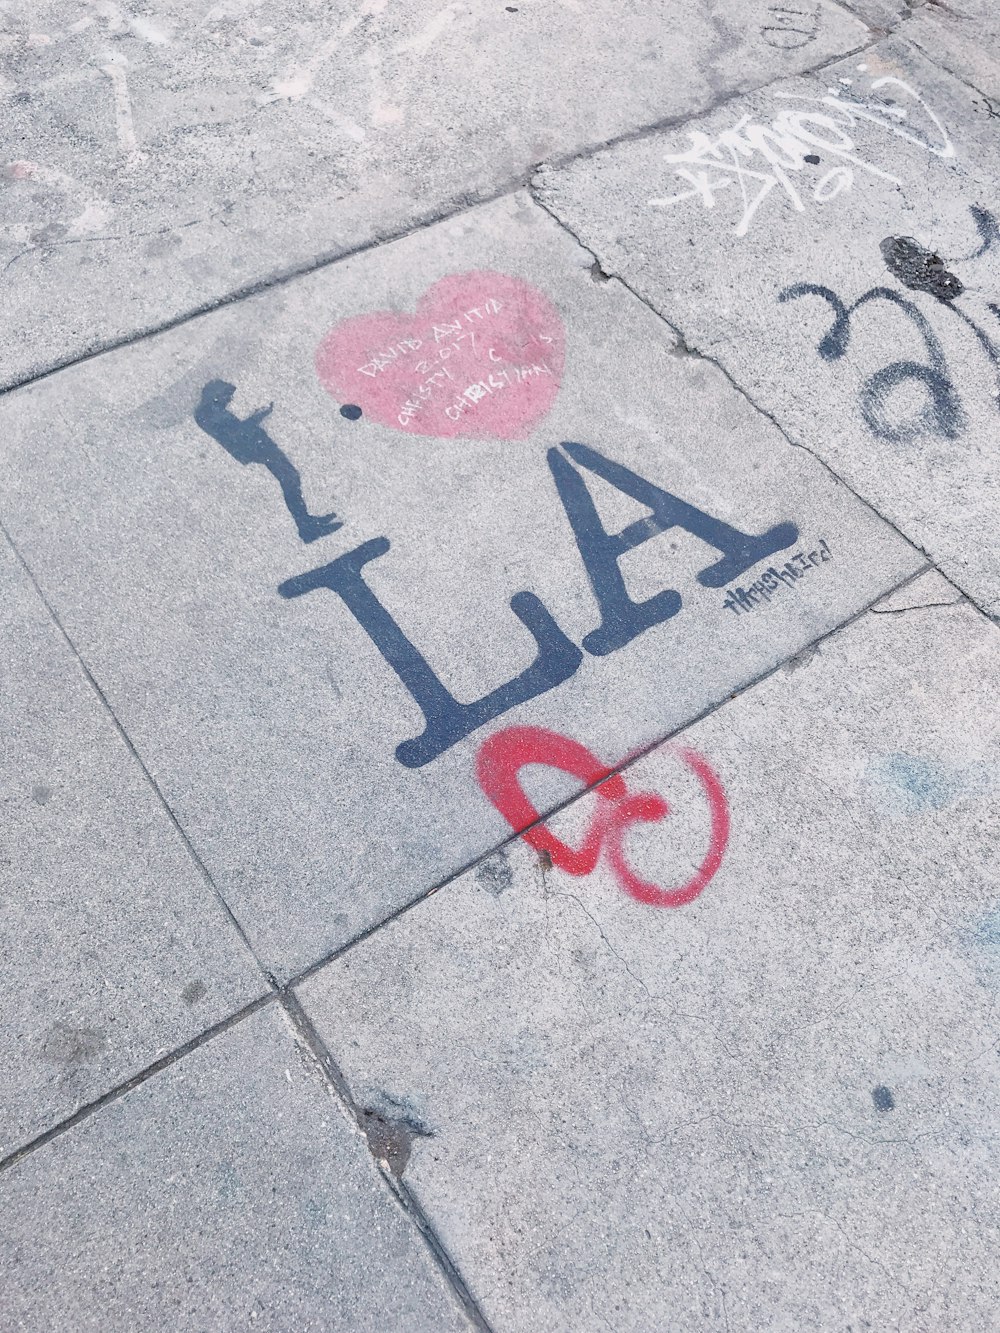 I graffiti di LA del cuore sul marciapiede